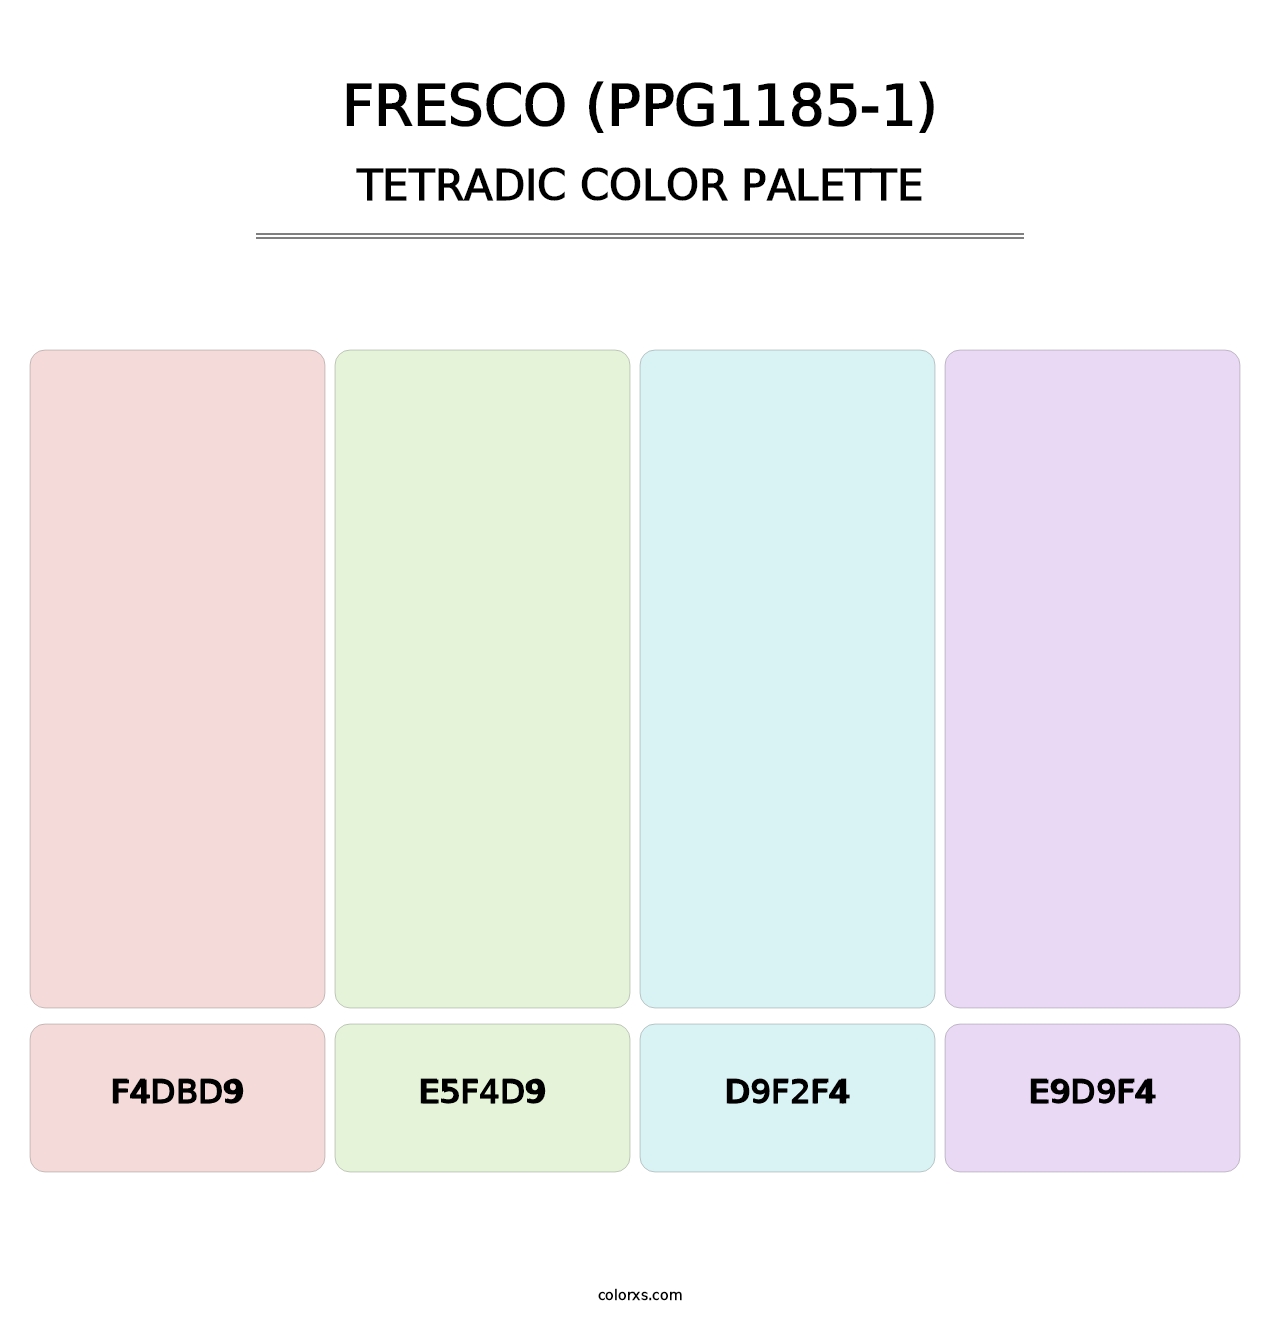 Fresco (PPG1185-1) - Tetradic Color Palette